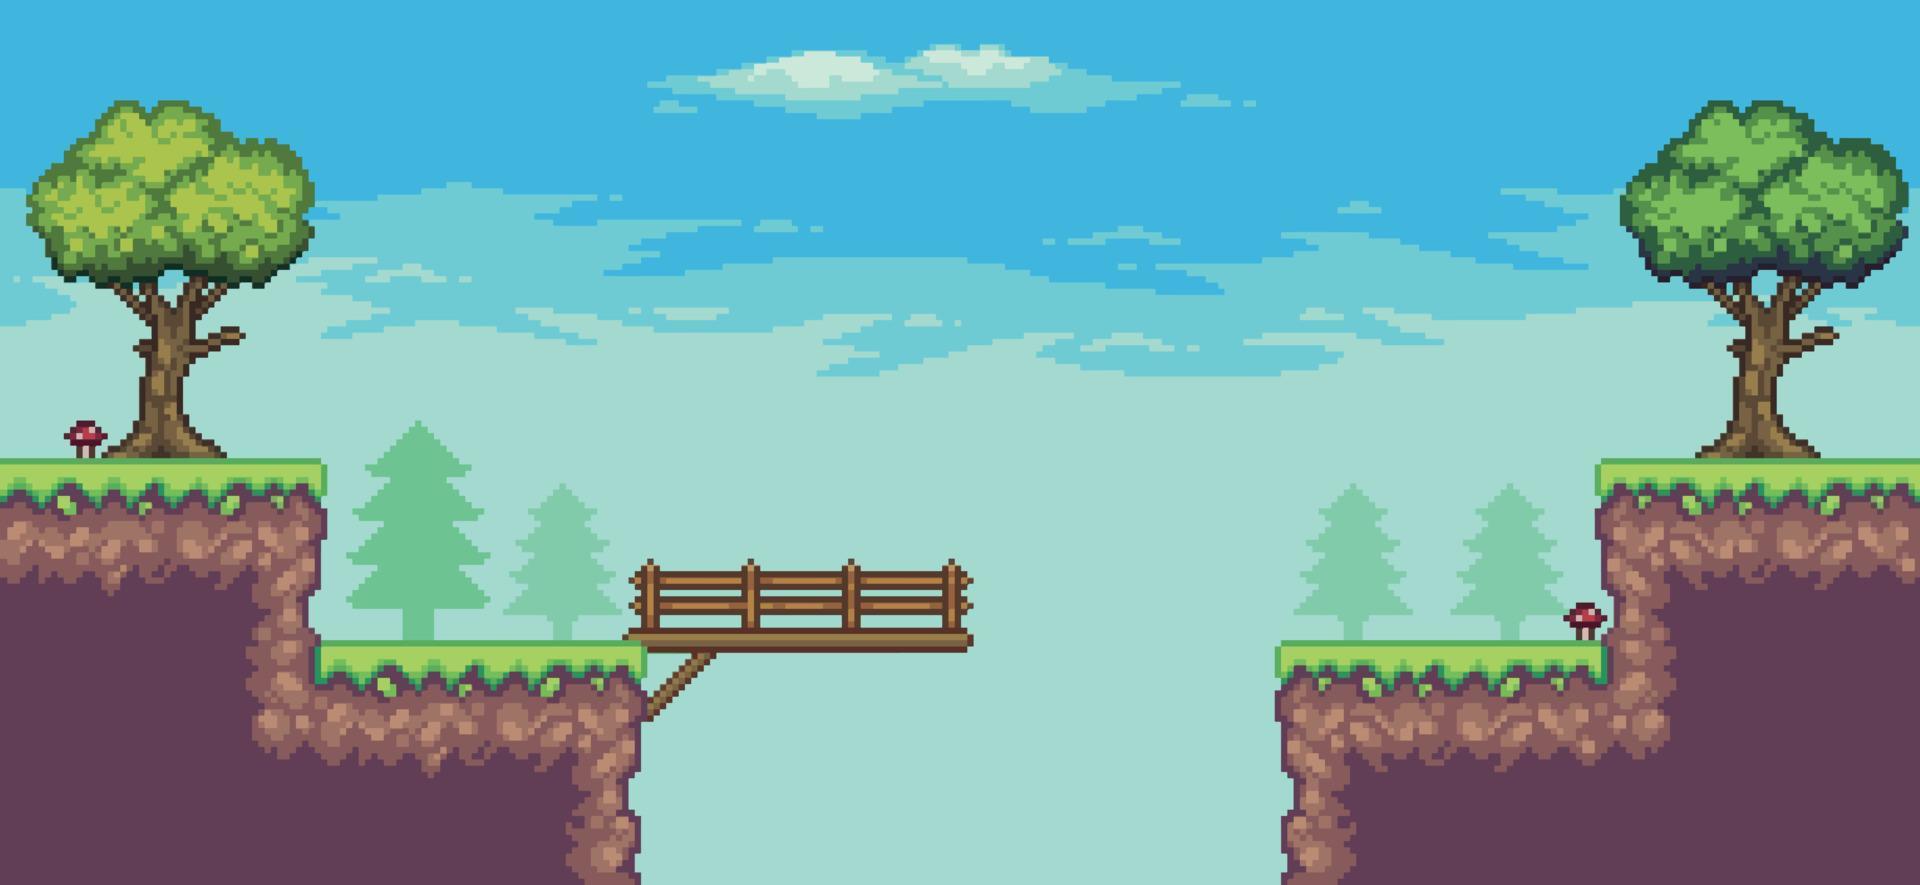 pixel konst arkad spel scen med träd, bro, trä- styrelse, och moln 8bit vektor bakgrund